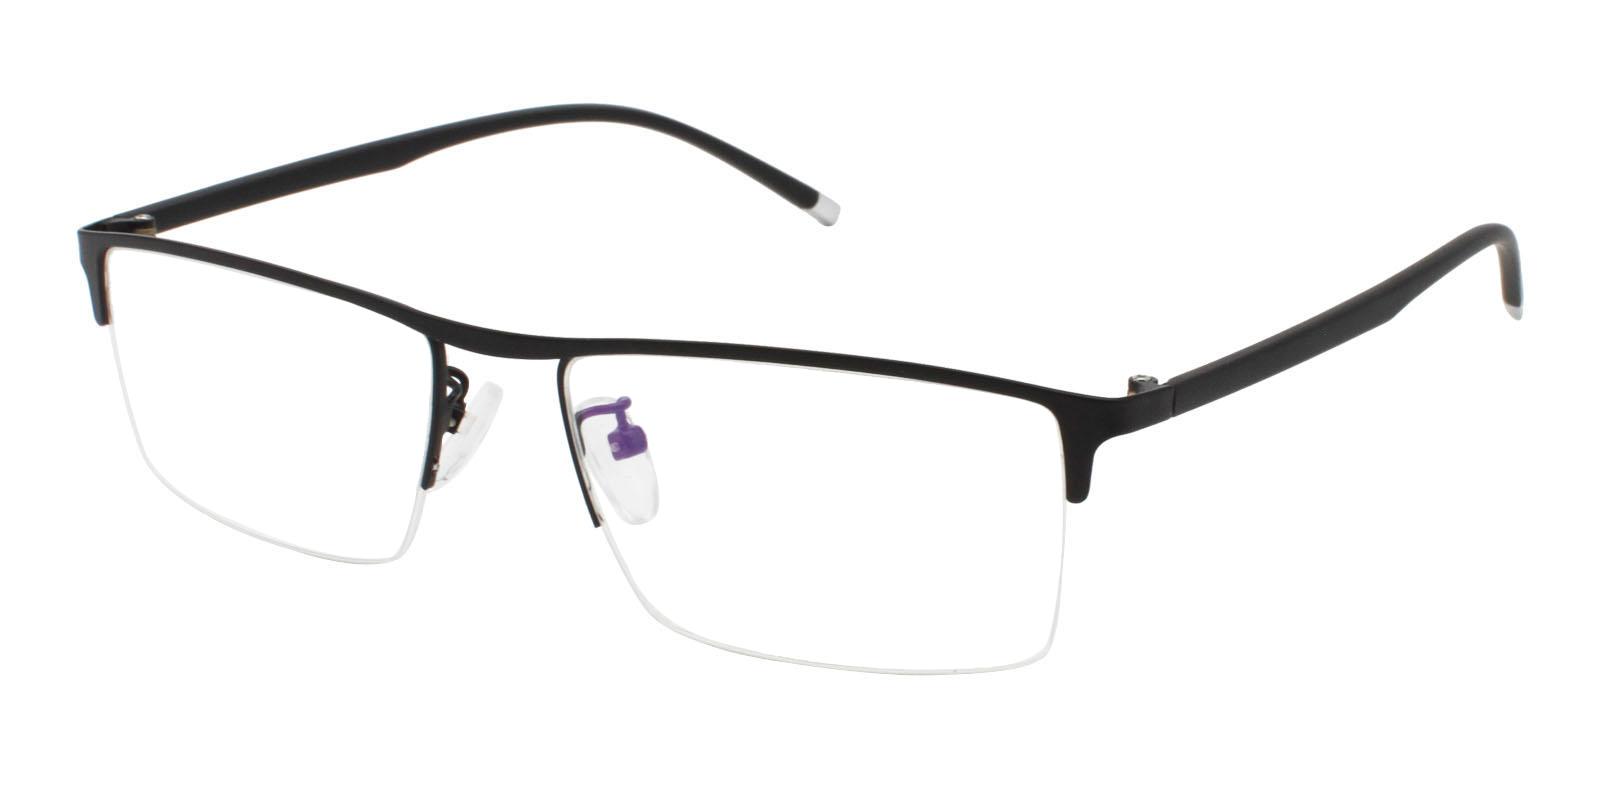 Jayden Black Metal Eyeglasses , NosePads Frames from ABBE Glasses